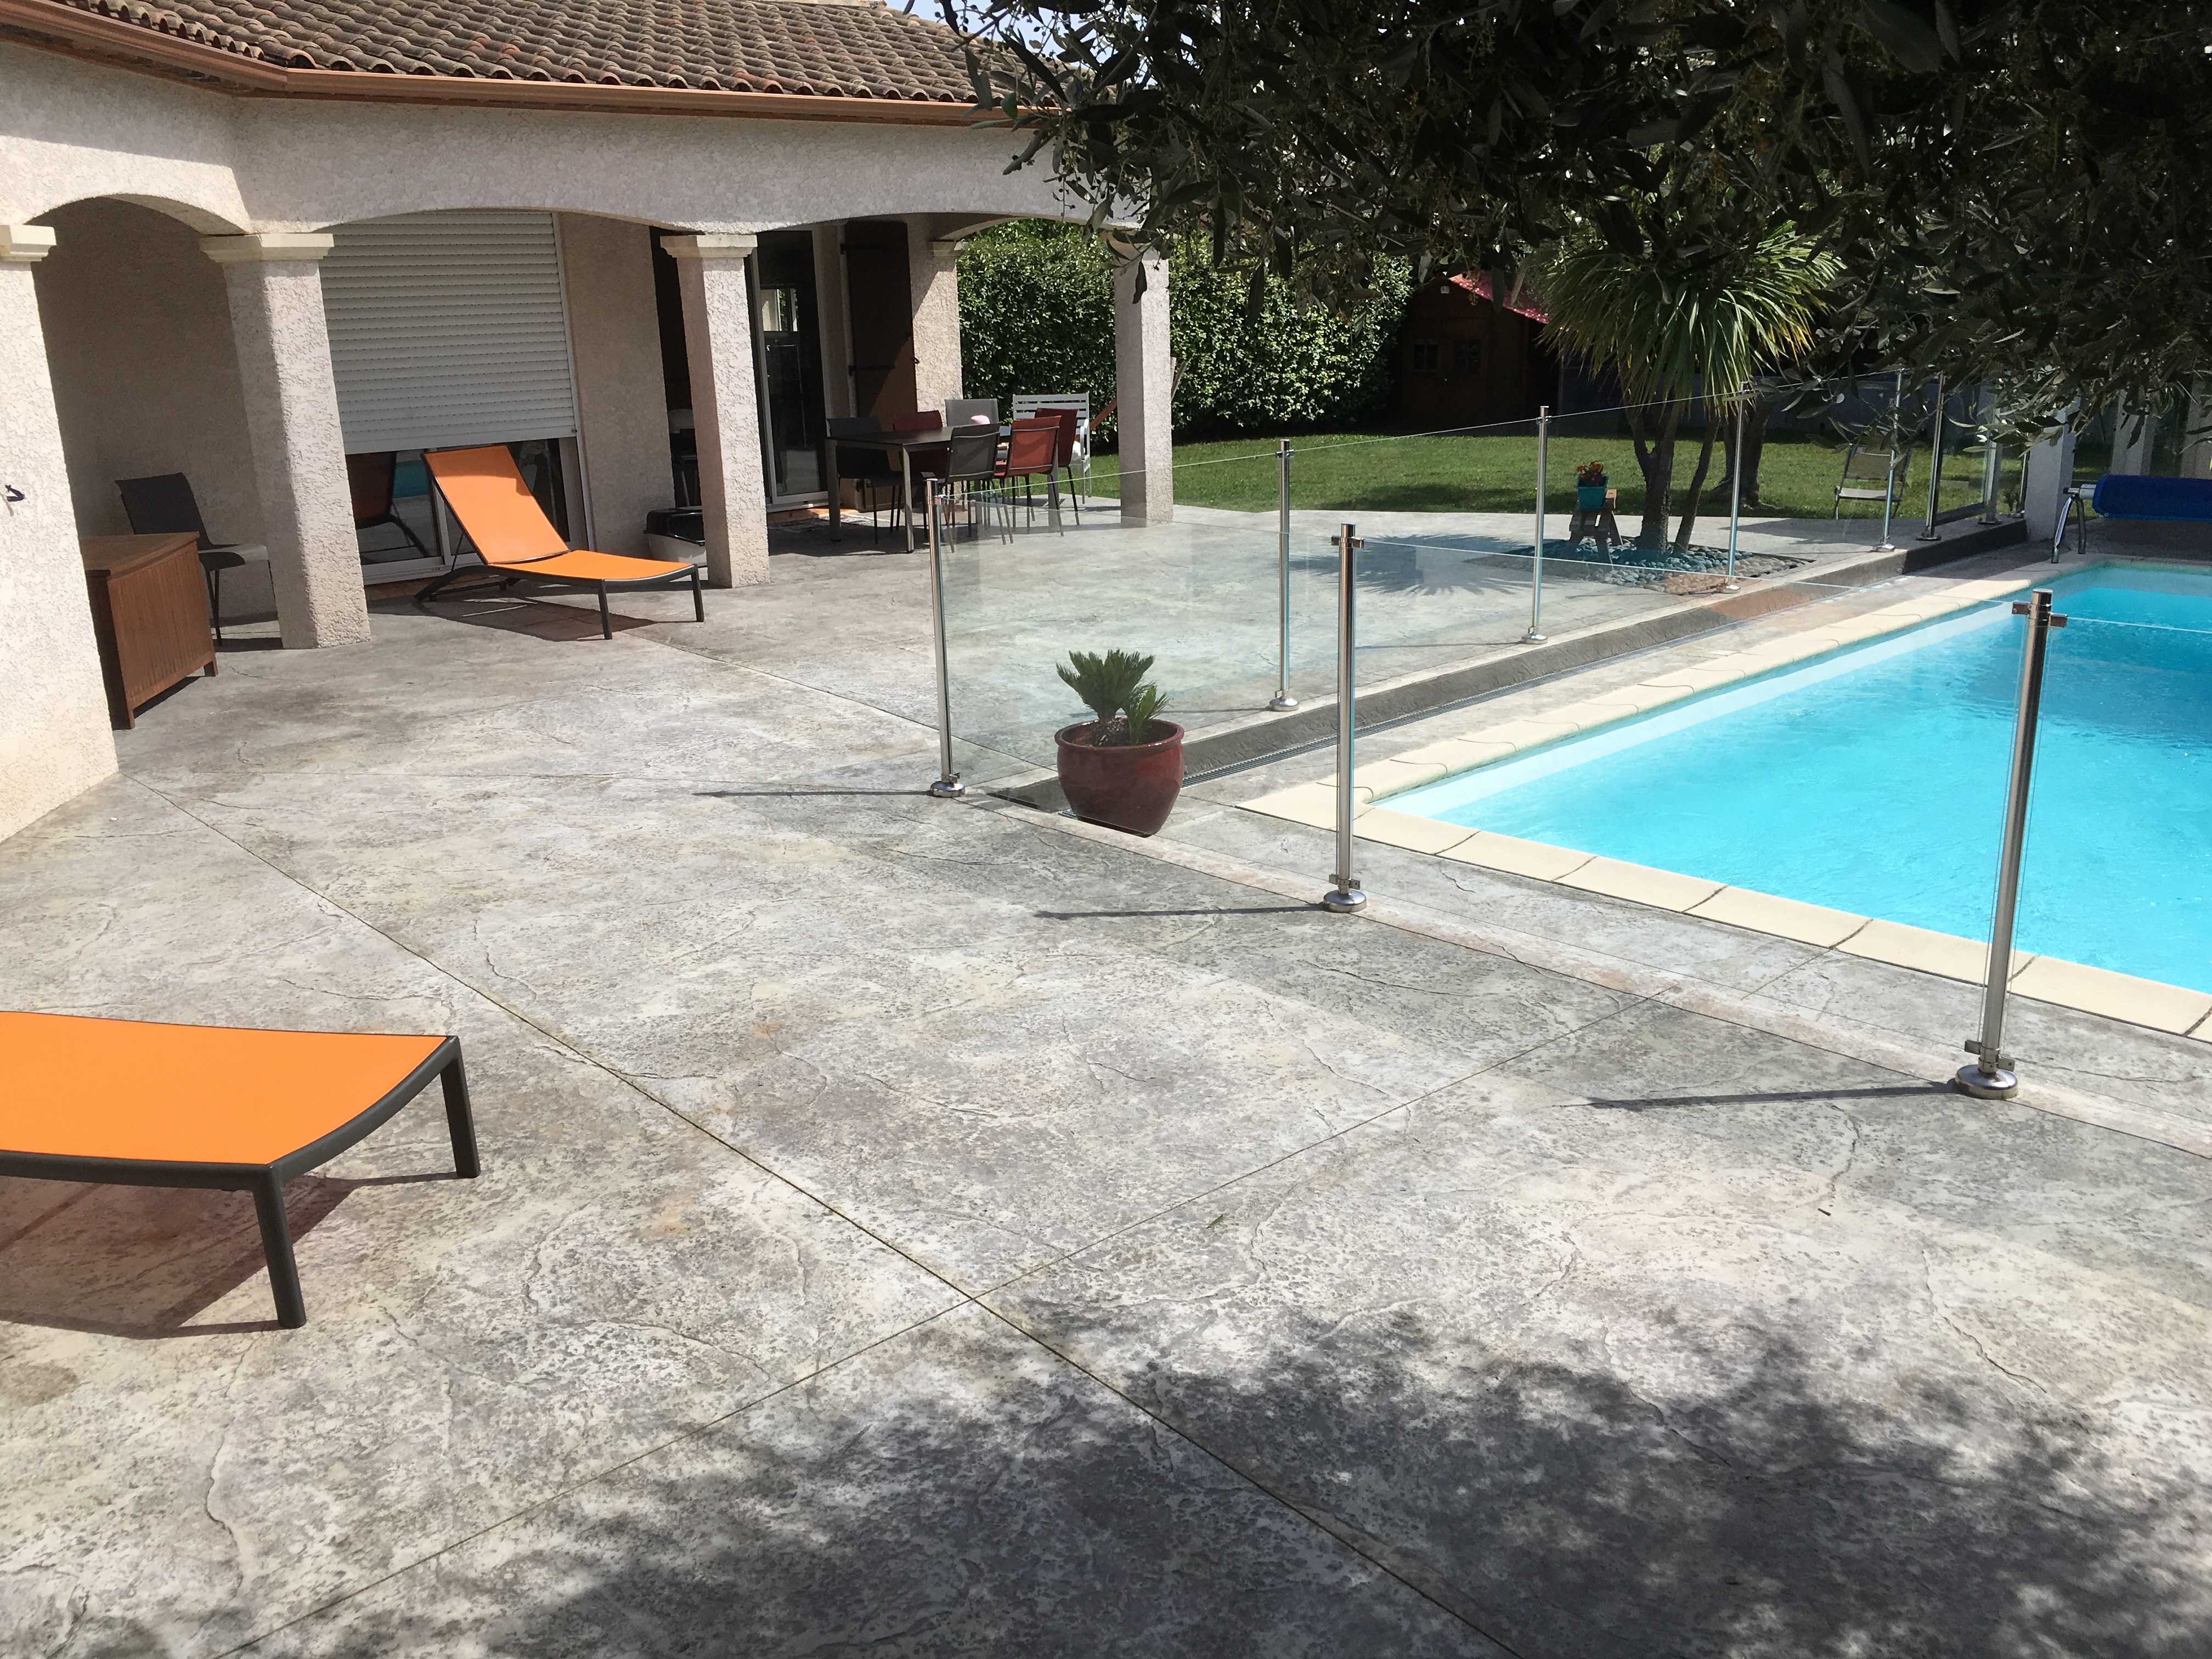 Terrasse / plage de piscine motif roche gris clair